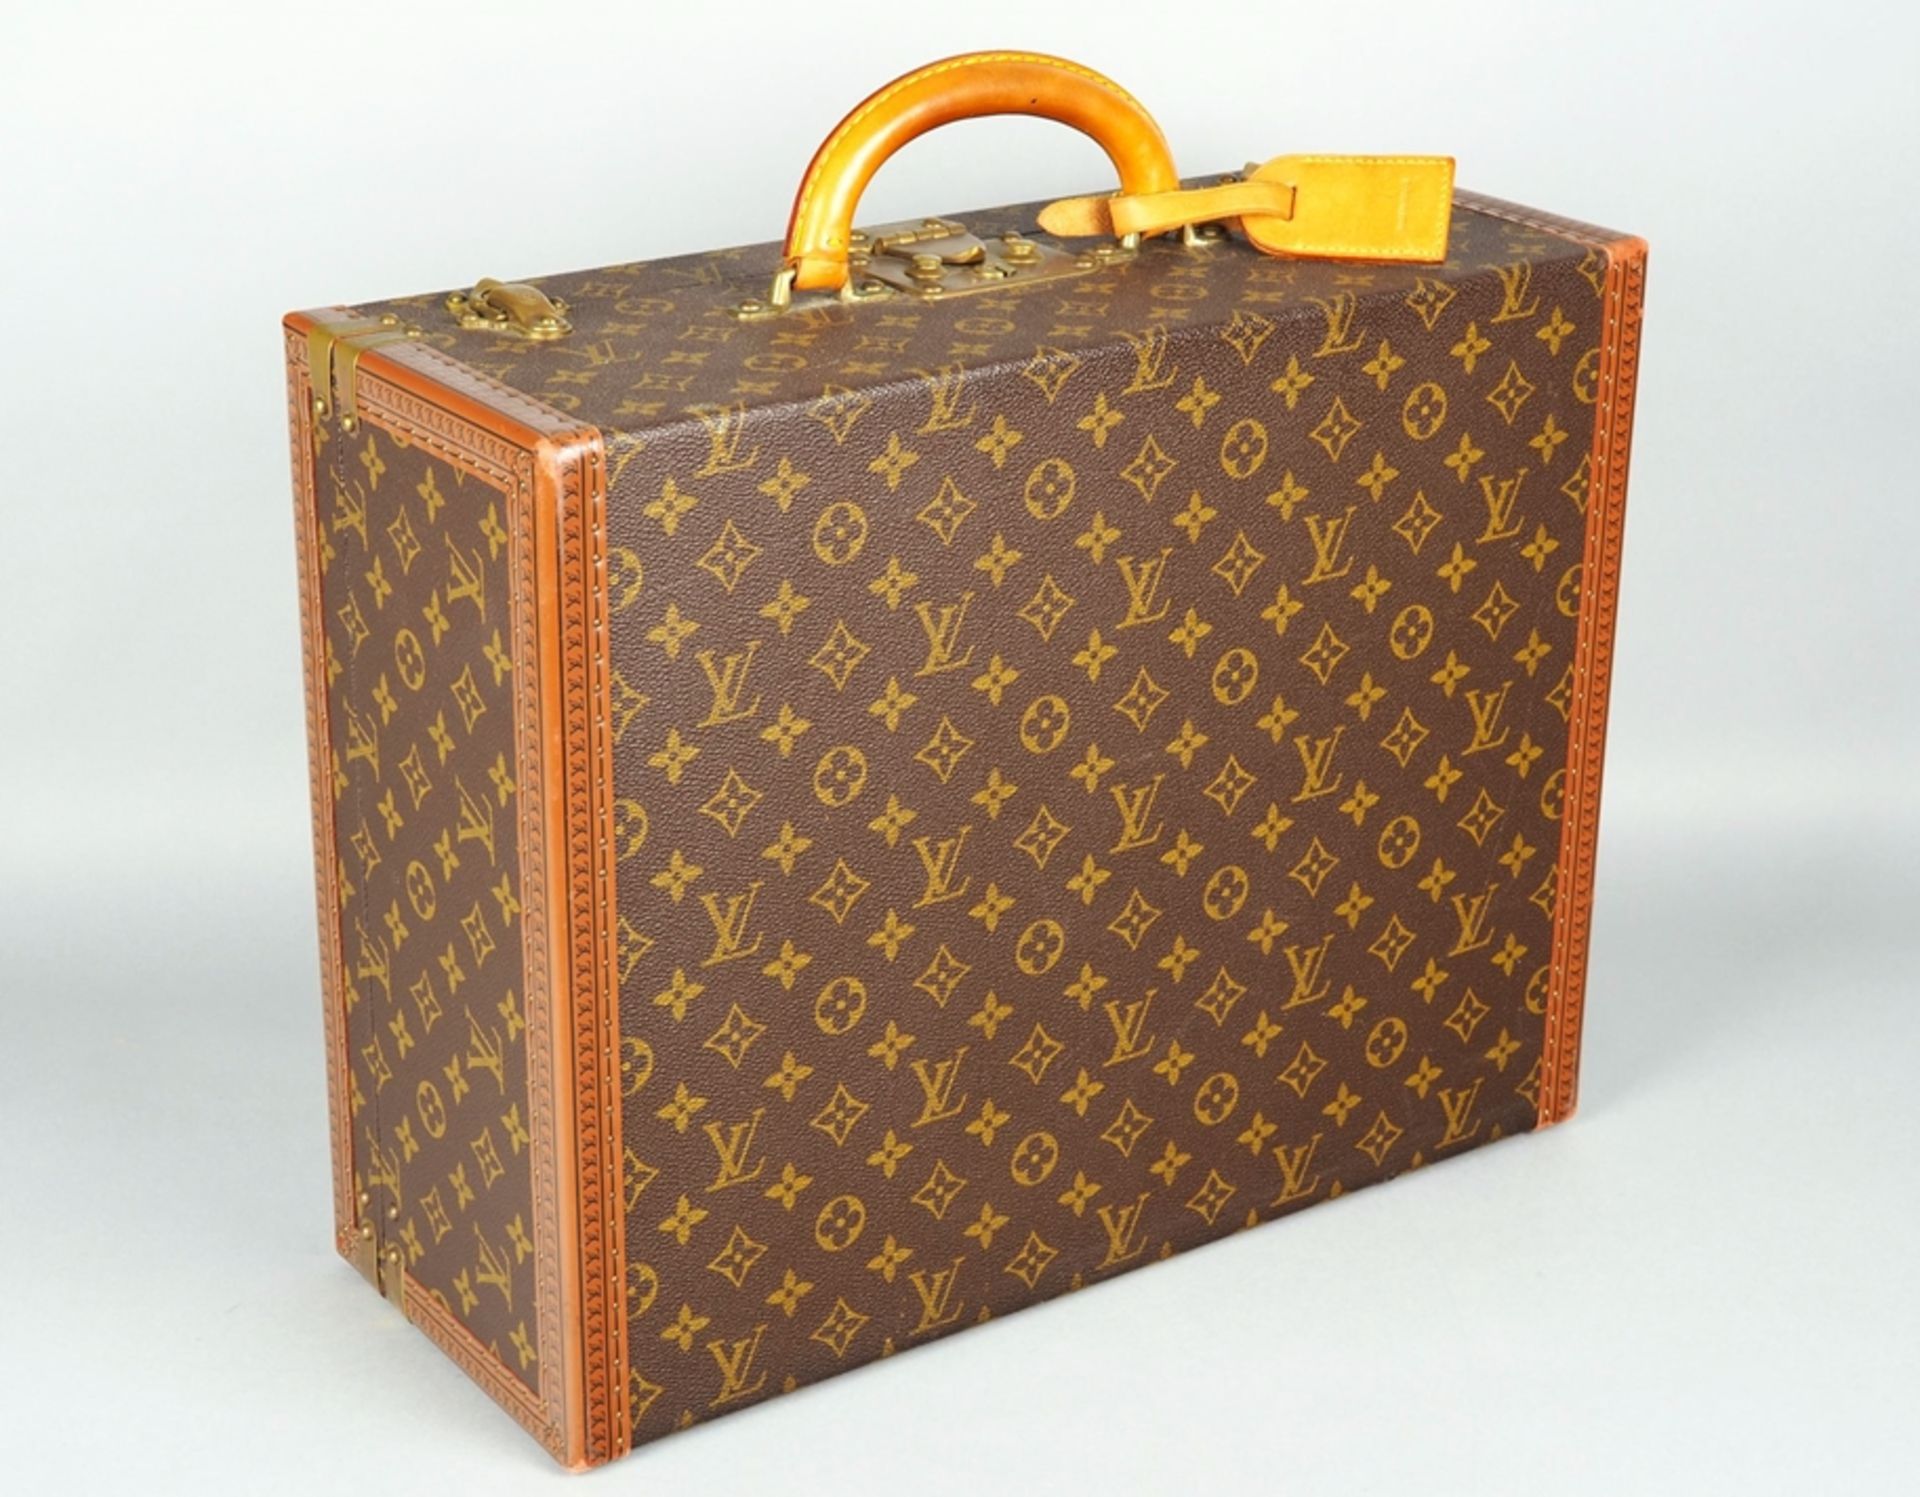 Louis Vuitton Cotteville 45 suitcase, vintage, 1980/90s.